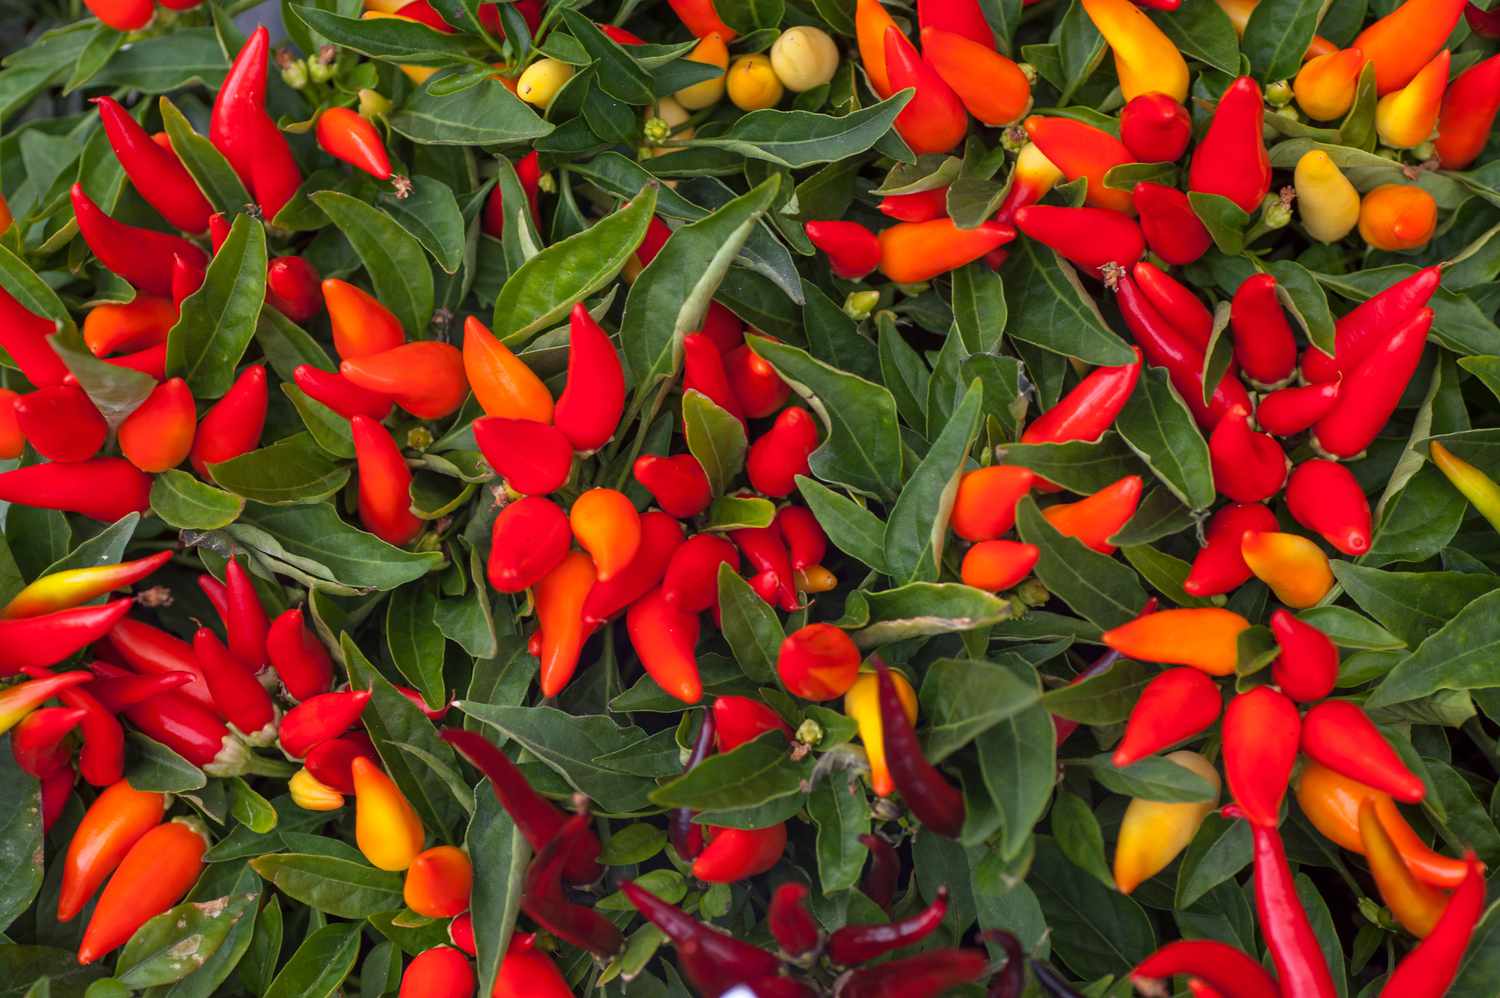 Zierpaprikapflanze mit spitzen roten und orangefarbenen Paprikaschoten, die zwischen langen Blättern stehen